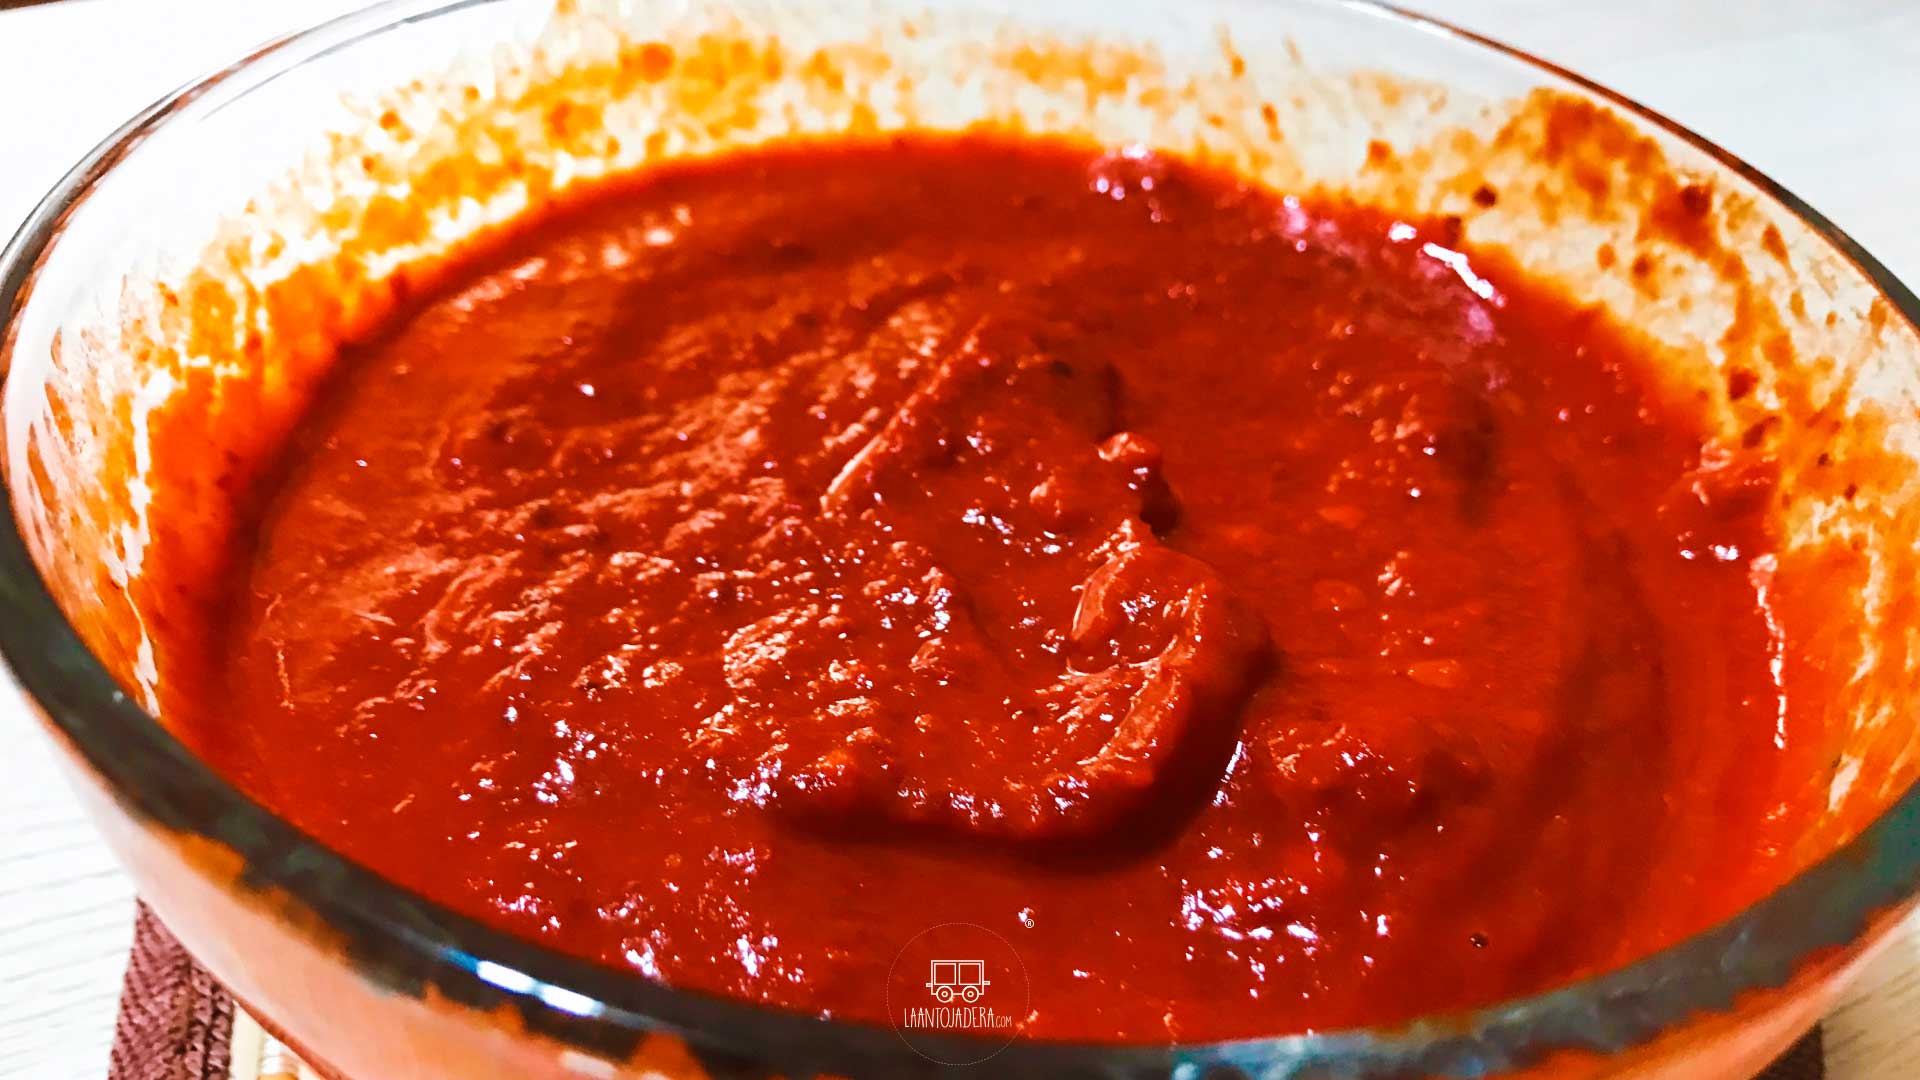 The Antojadera | Pozolera sauce